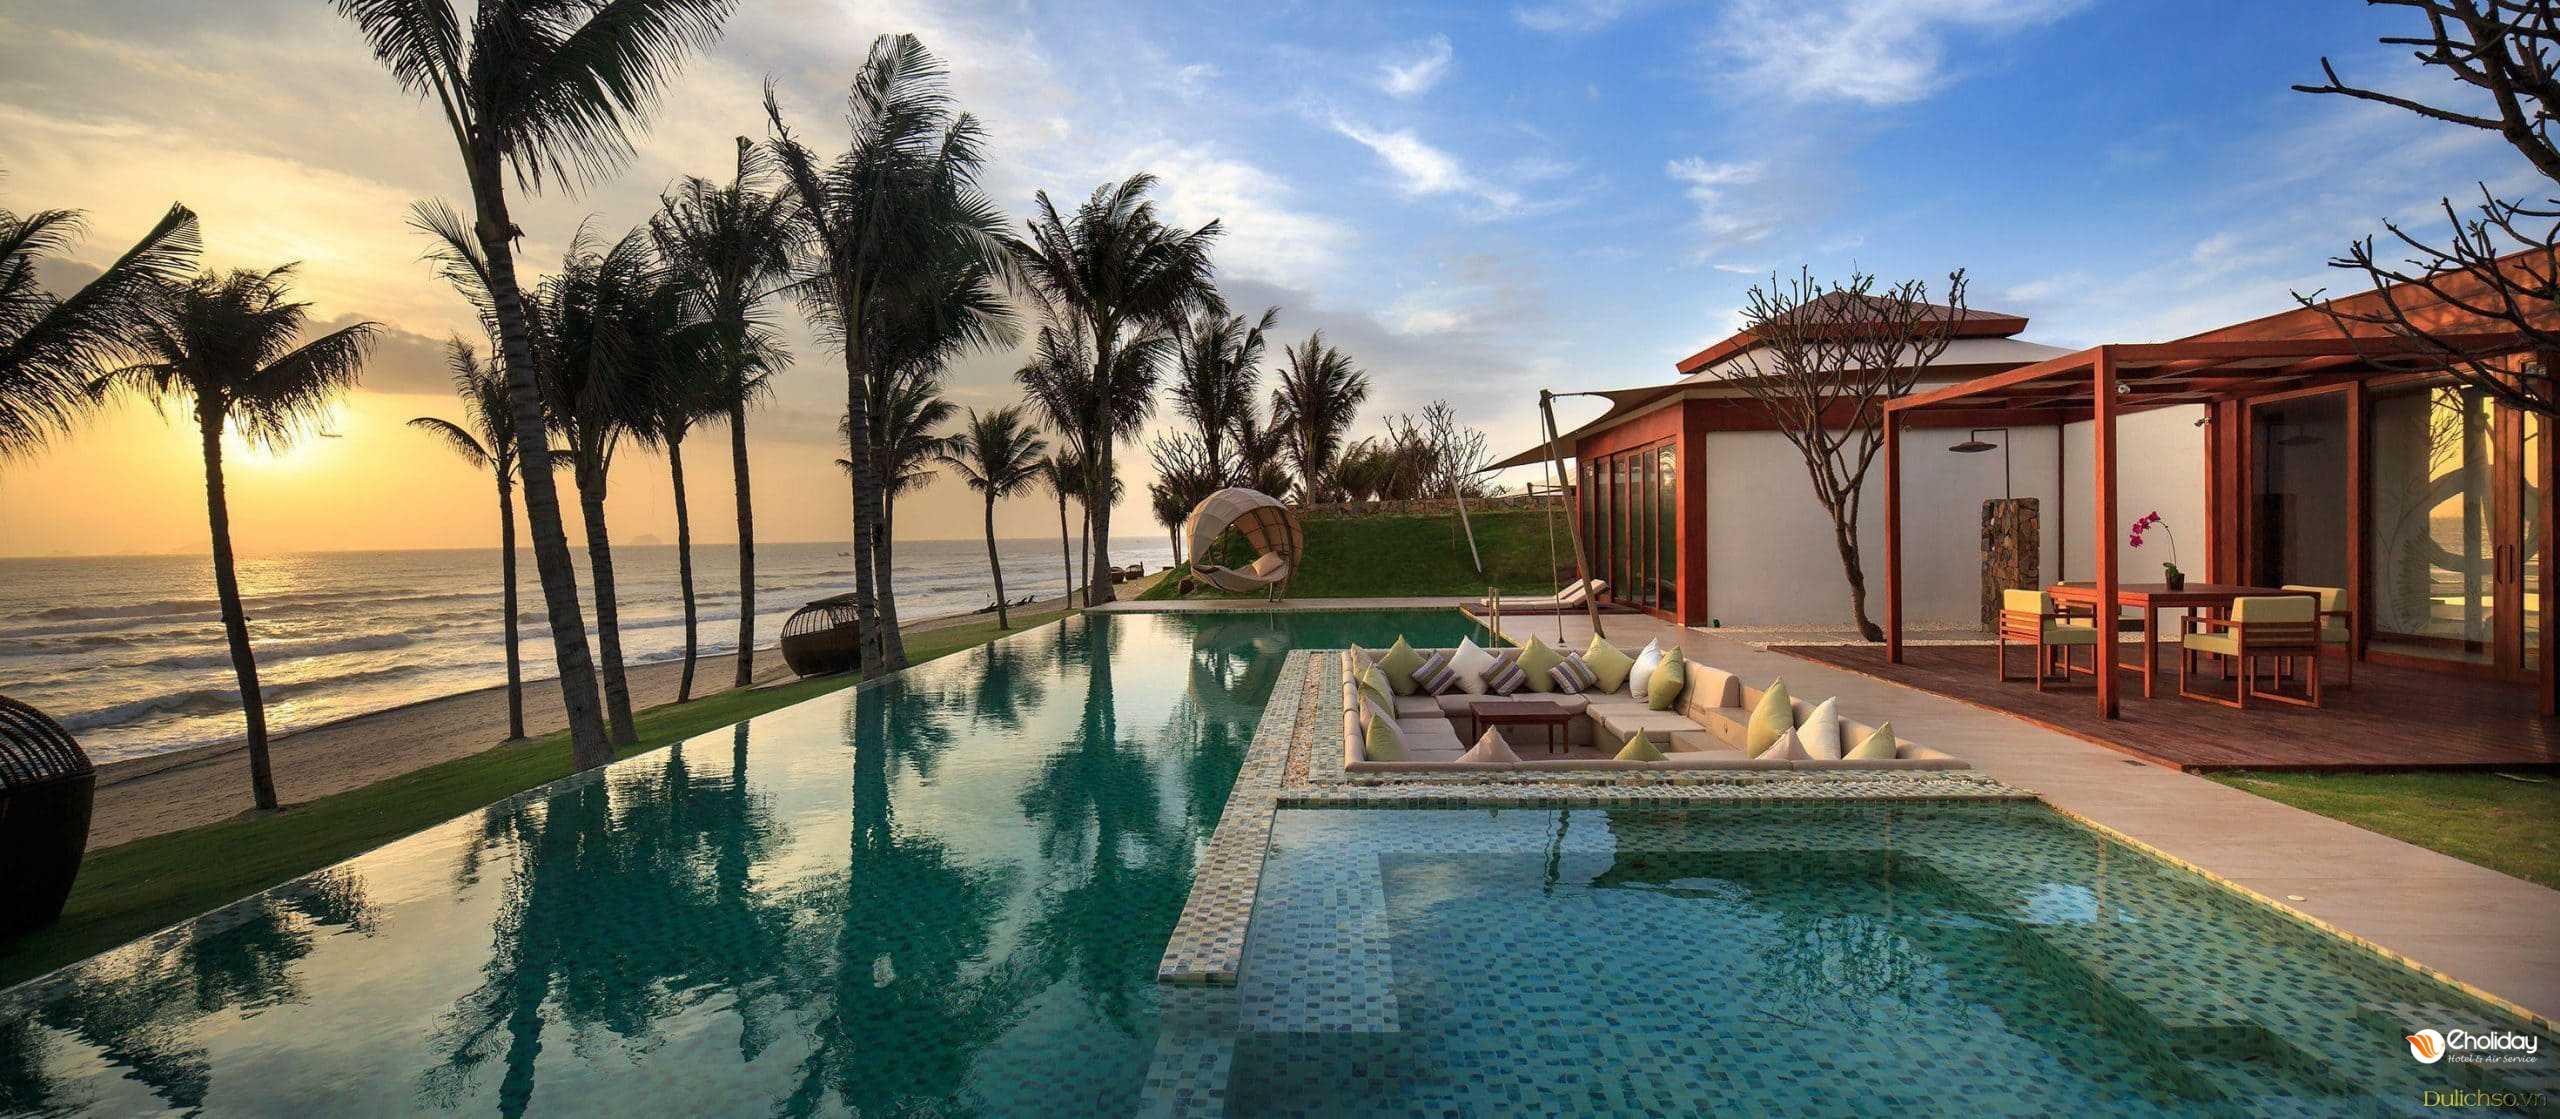 Top 10 Resort View Bien Hot Nhat O Phu Quoc 2021 13